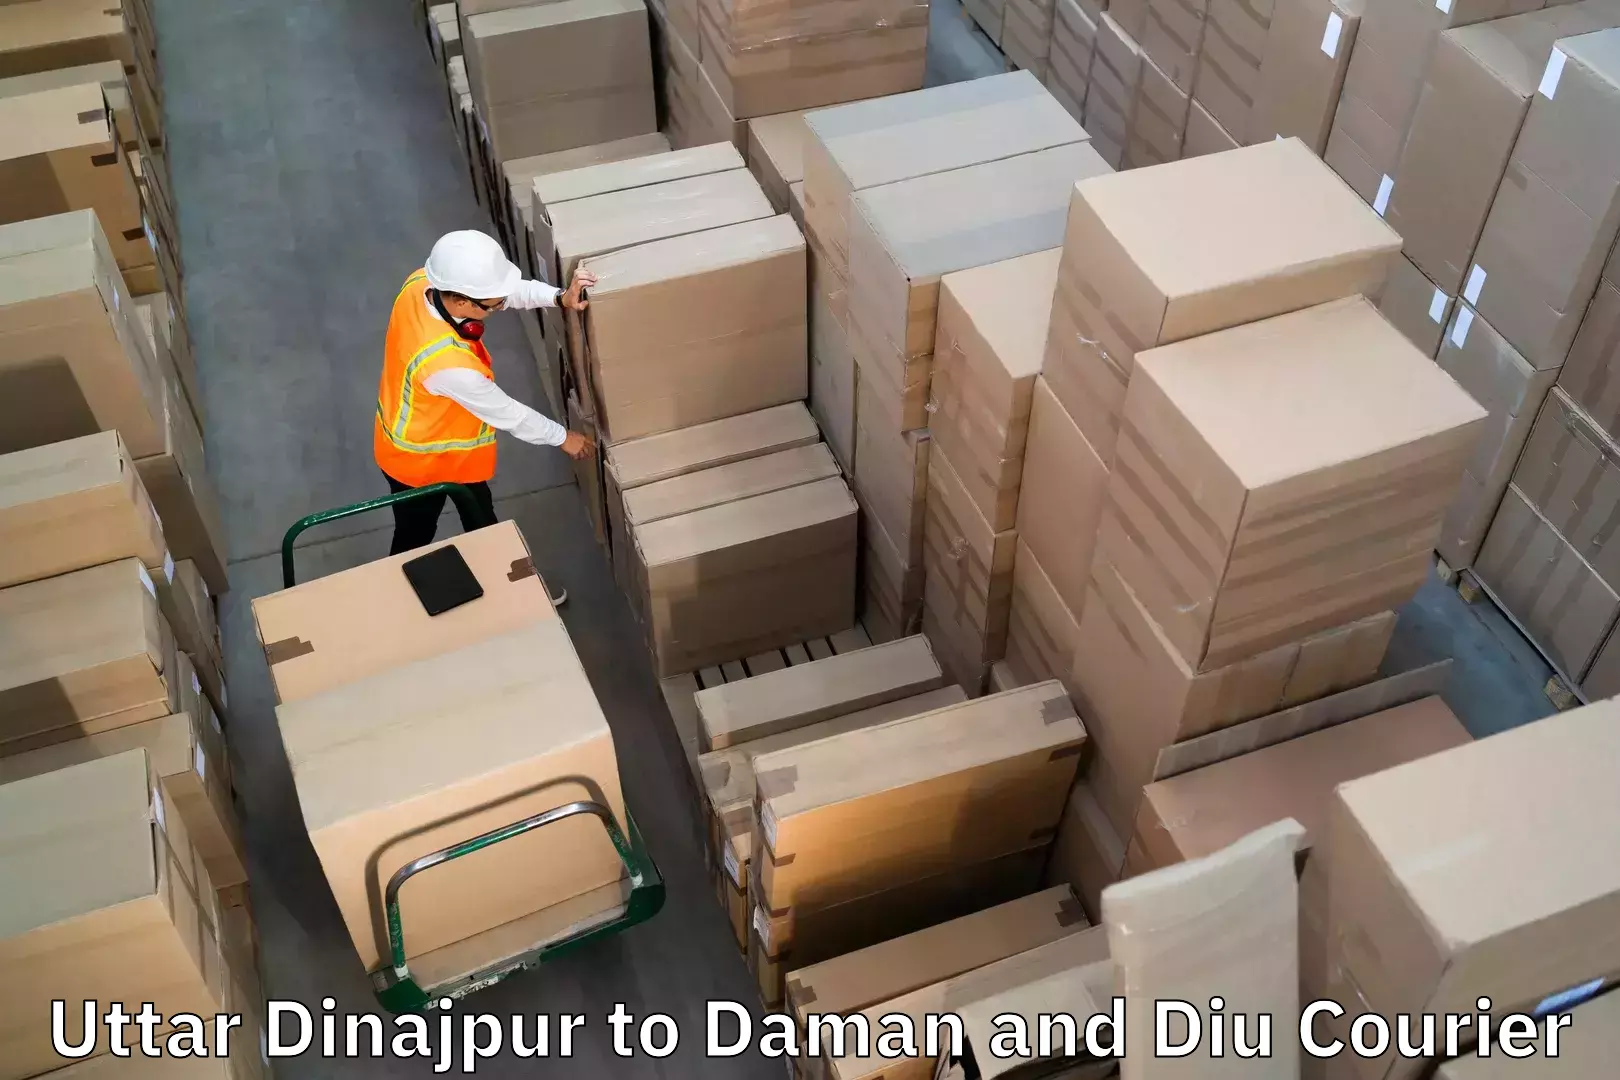 Same day luggage service Uttar Dinajpur to Diu